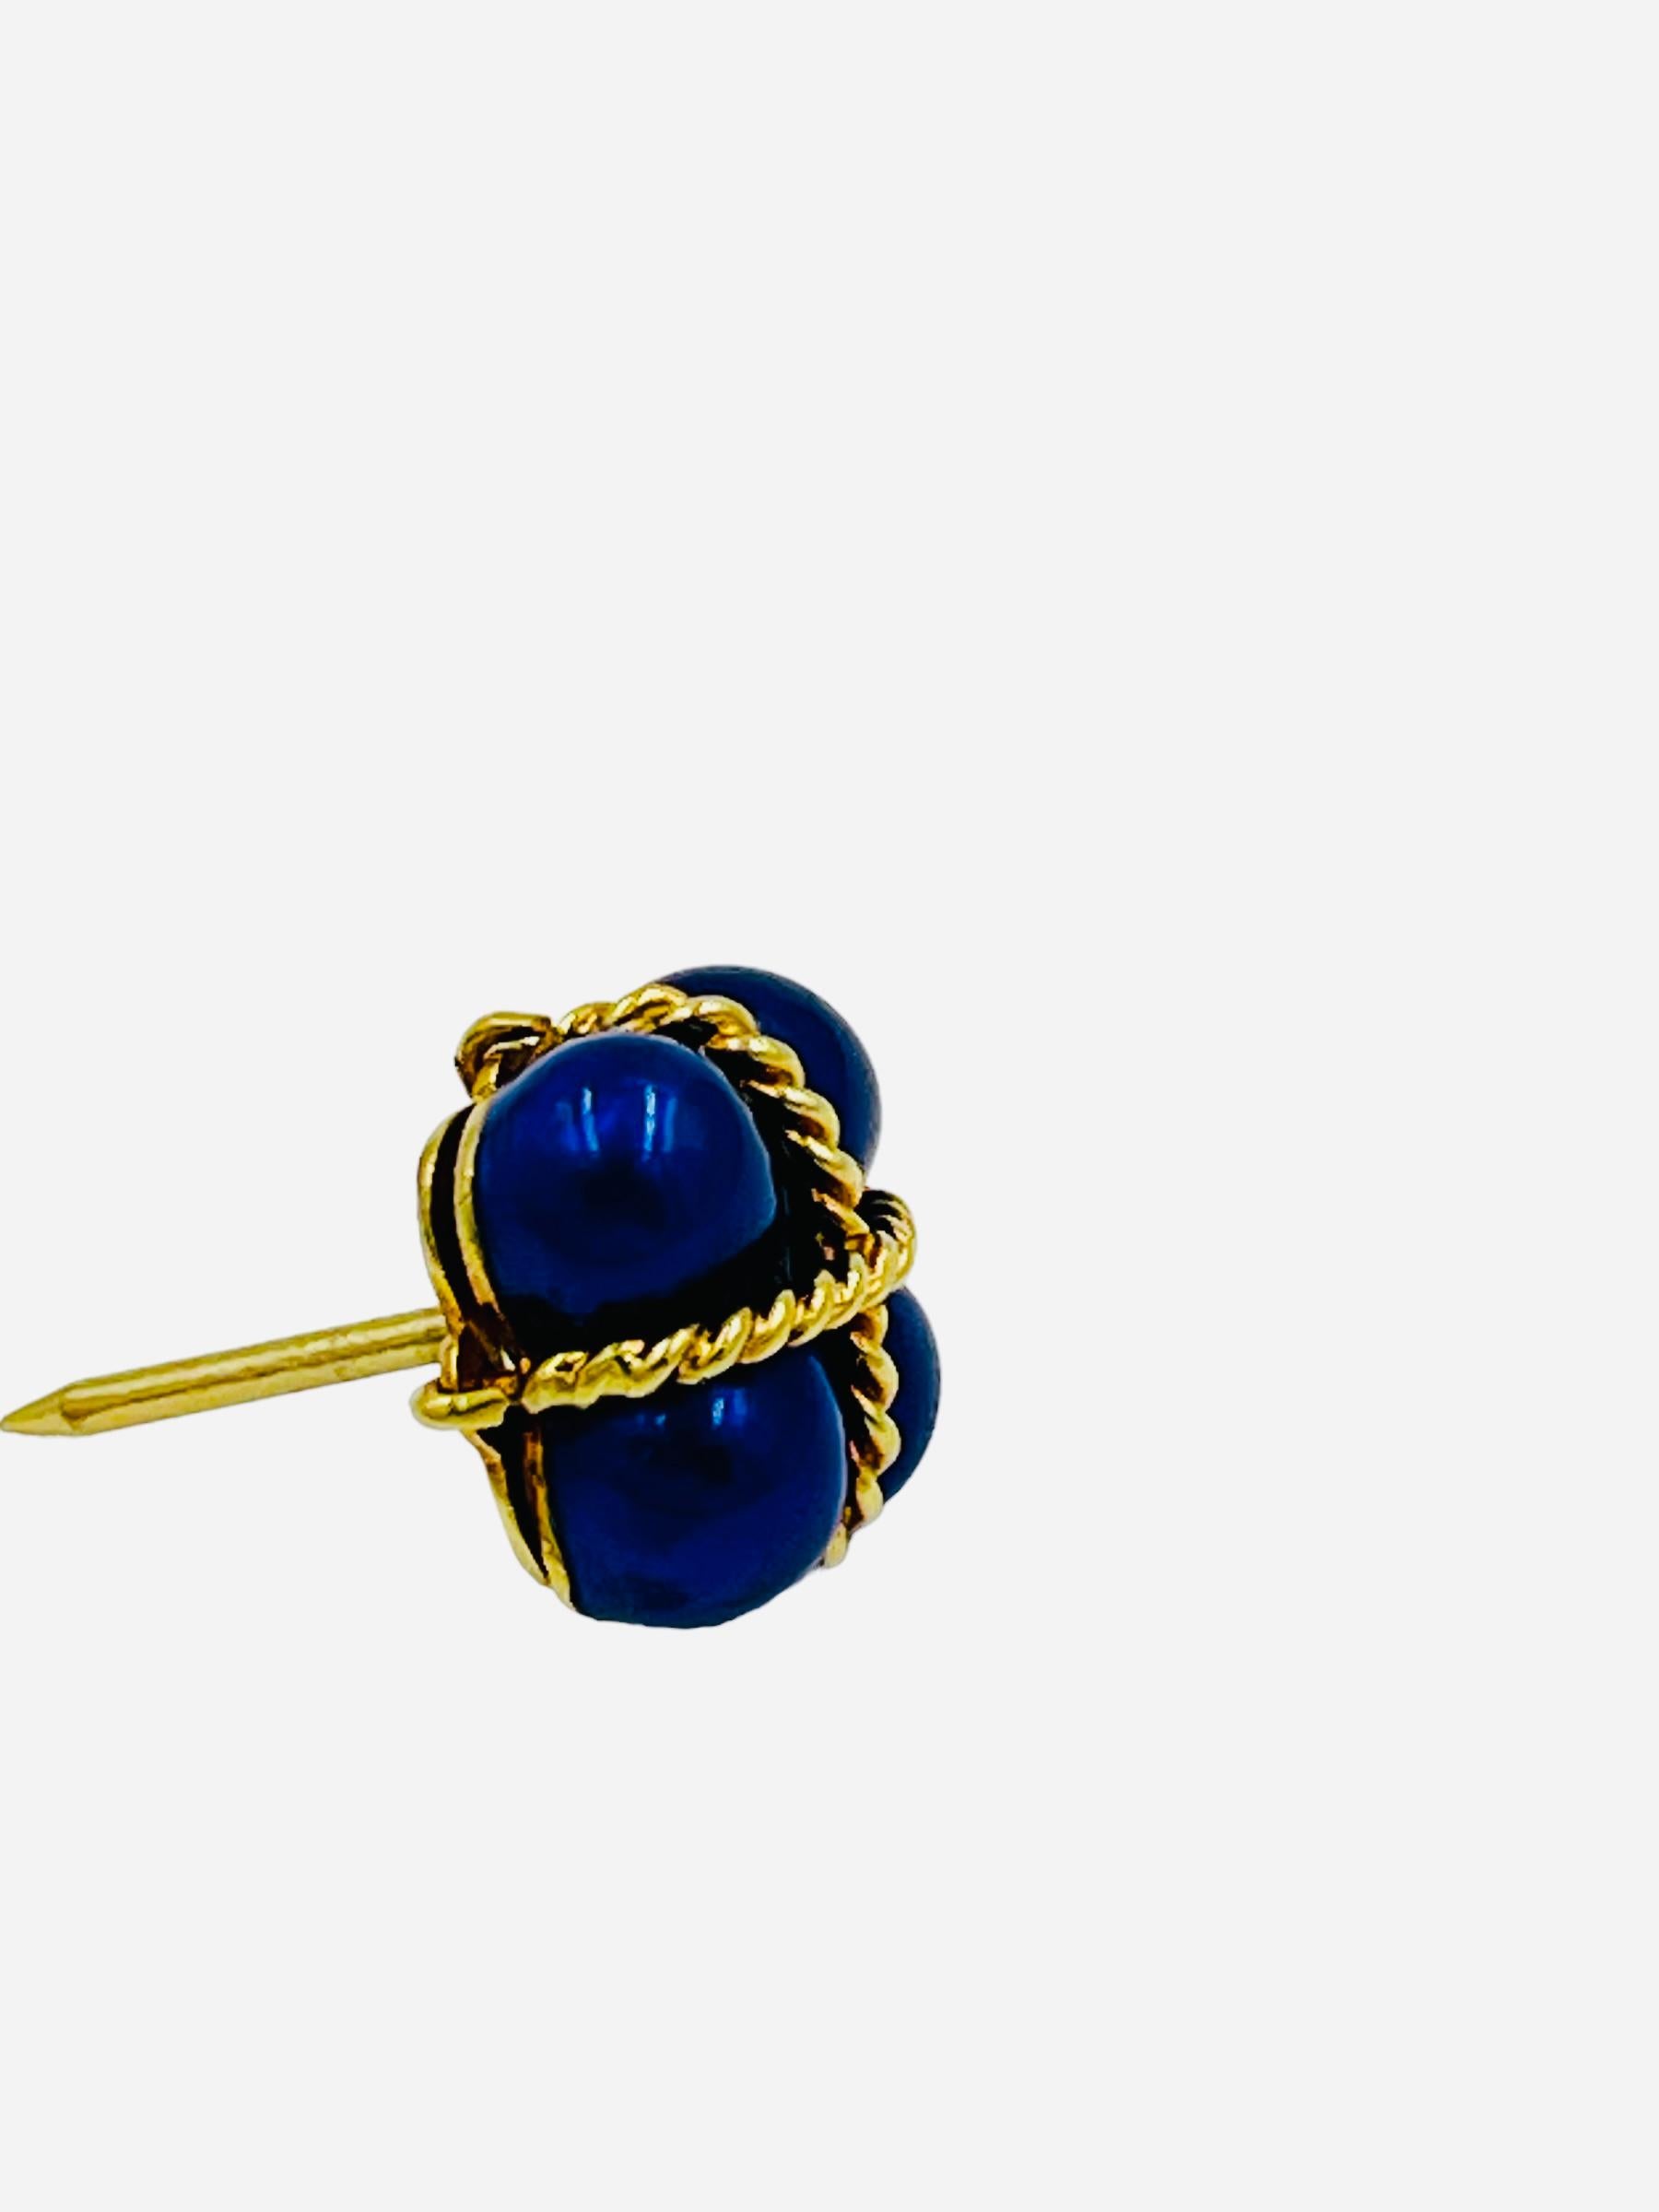 Vintage 18k or jaune émail bleu épingle de revers, pince à cravate, circa 1980.  Il est magnifiquement réalisé avec un motif de corde torsadée très détaillé qui s'enroule autour de l'attache émaillée.

Il mesure 11 mm sur 11 mm et pèse environ 3,7